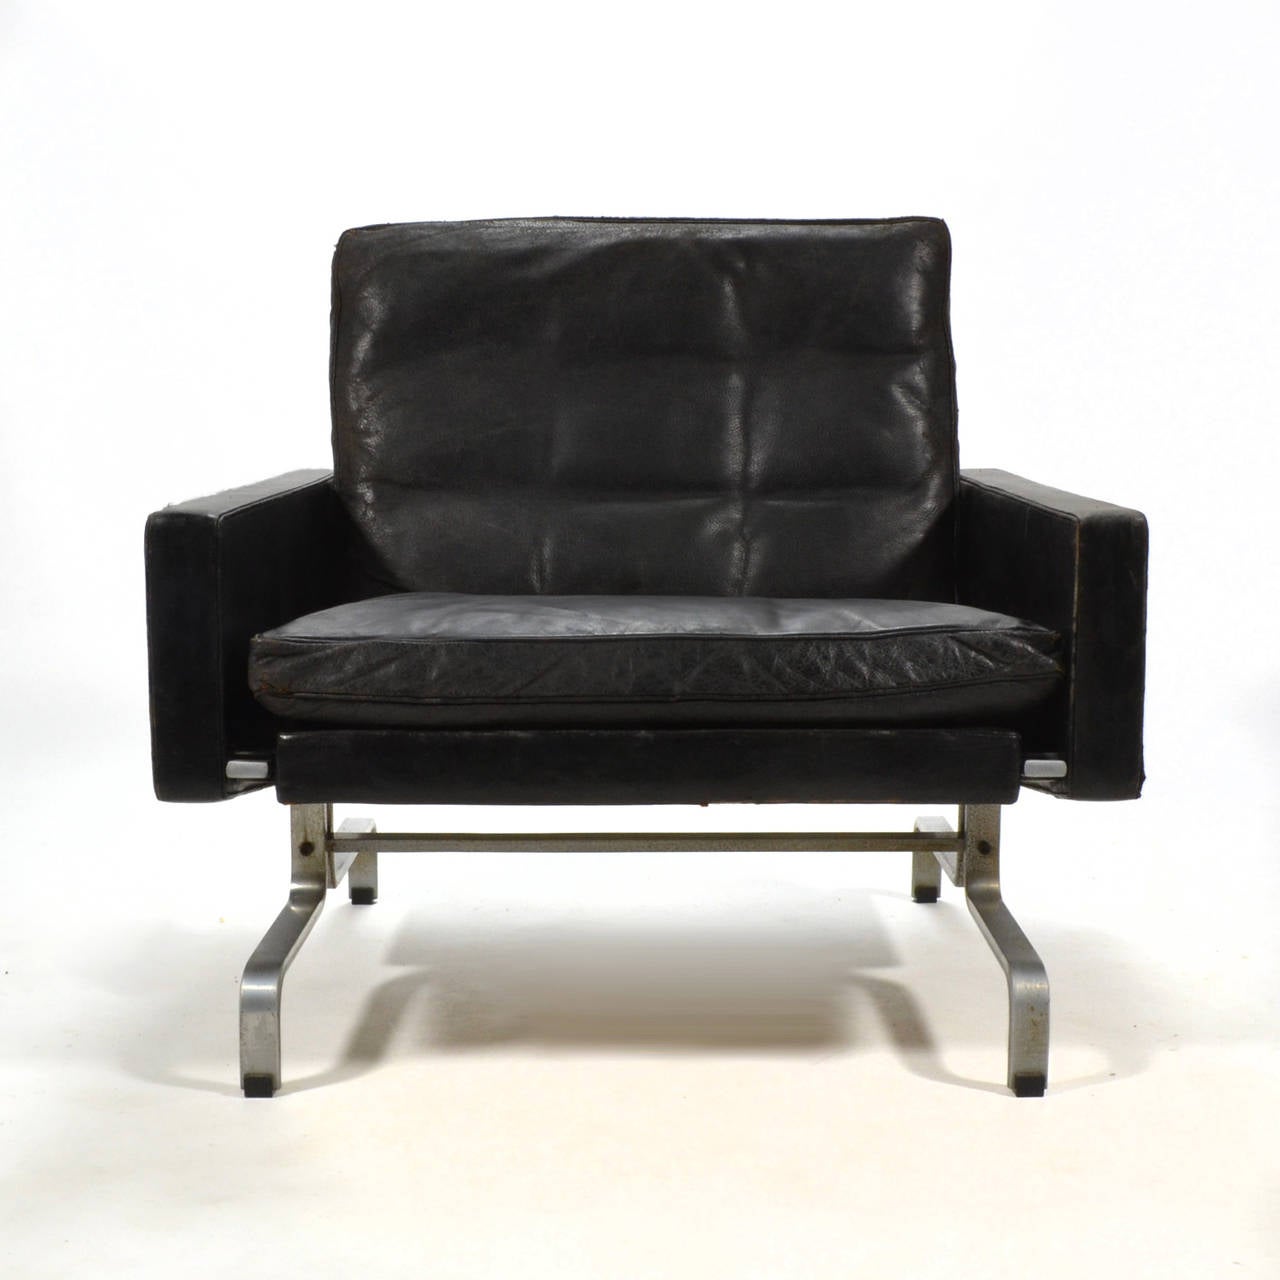 Mid-20th Century Poul Kjaerholm PK-31/1 Lounge Chair by E. Kold Christensen